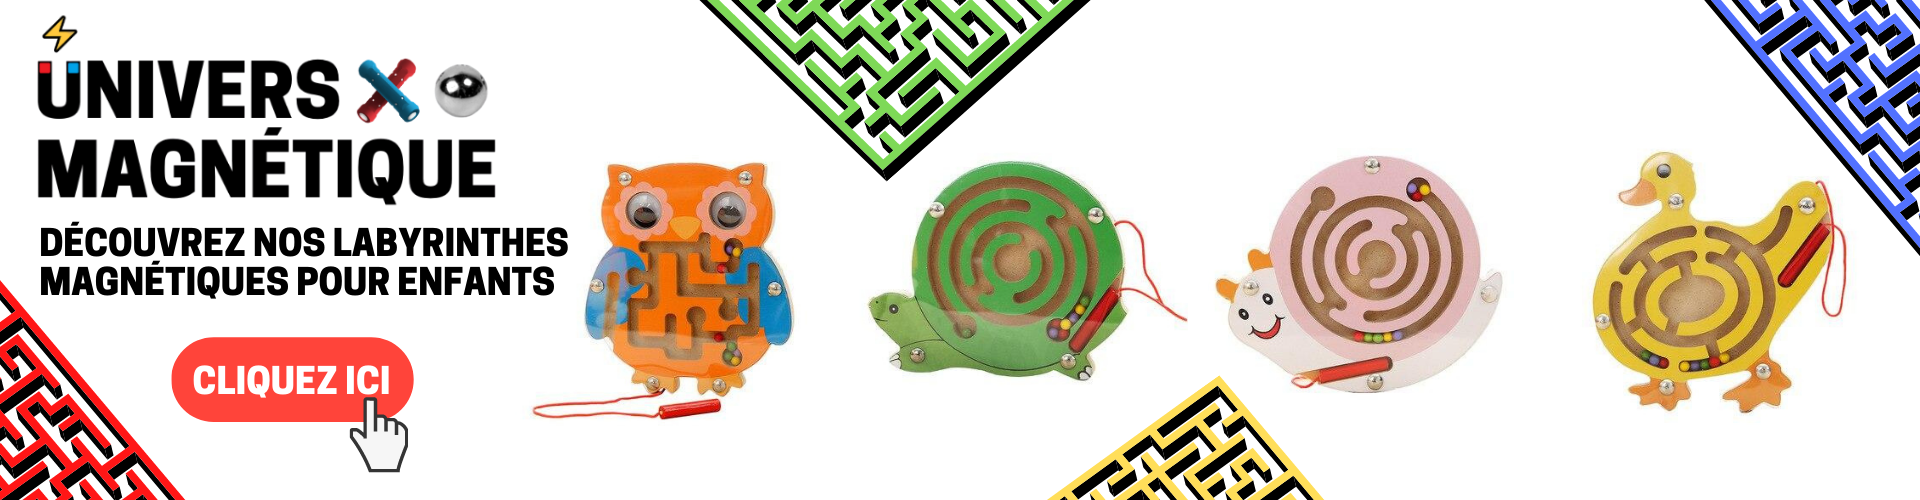 labyrinthes magnétiques jeux jouets aimantés pour petits univers magnétiques